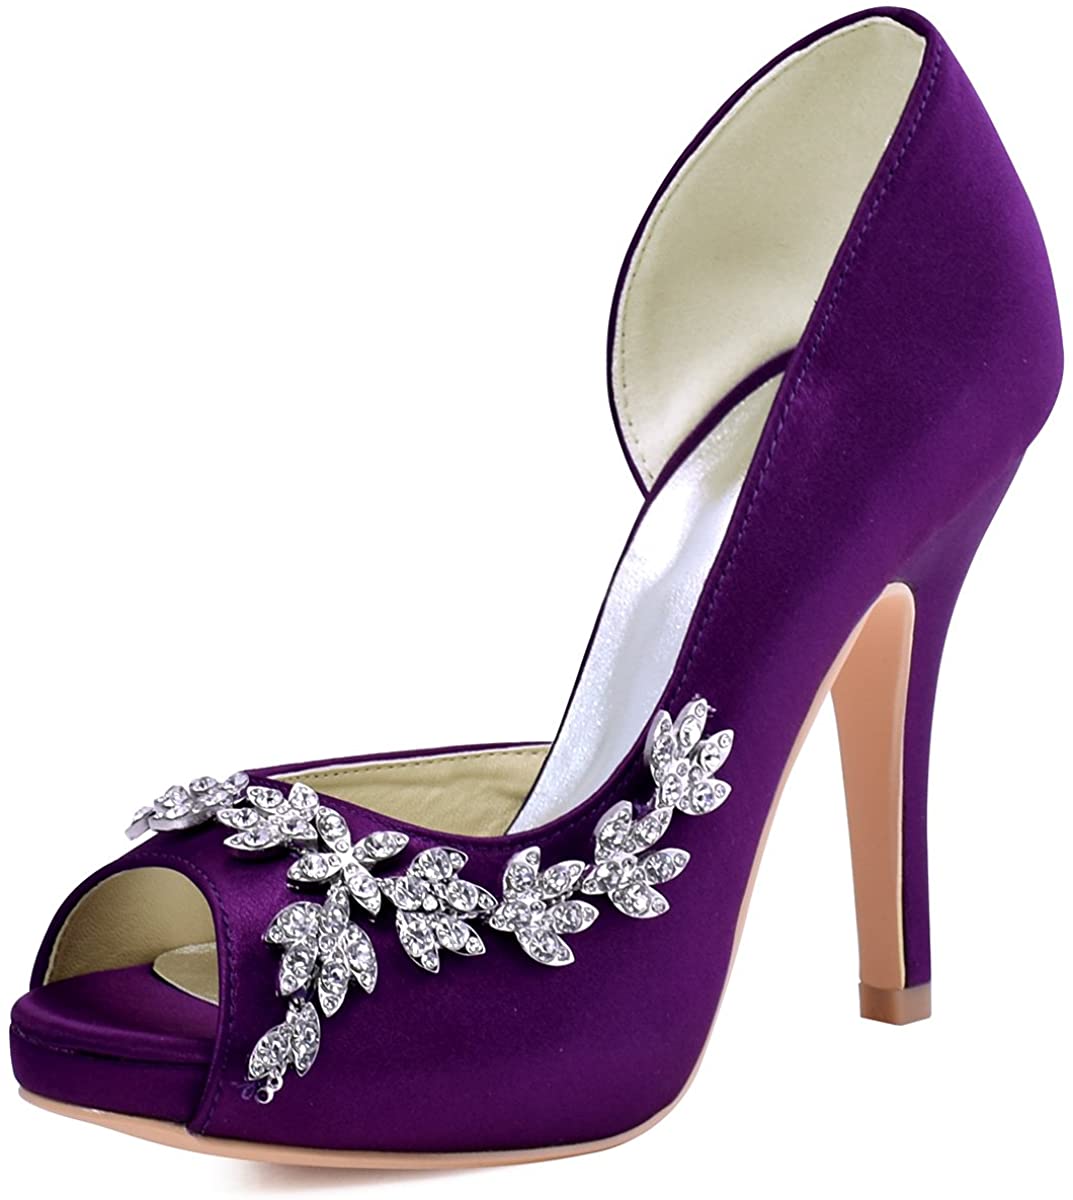 ElegantPark Wedding Shoes for Bride High Heel Platform Bridal Shoes ...